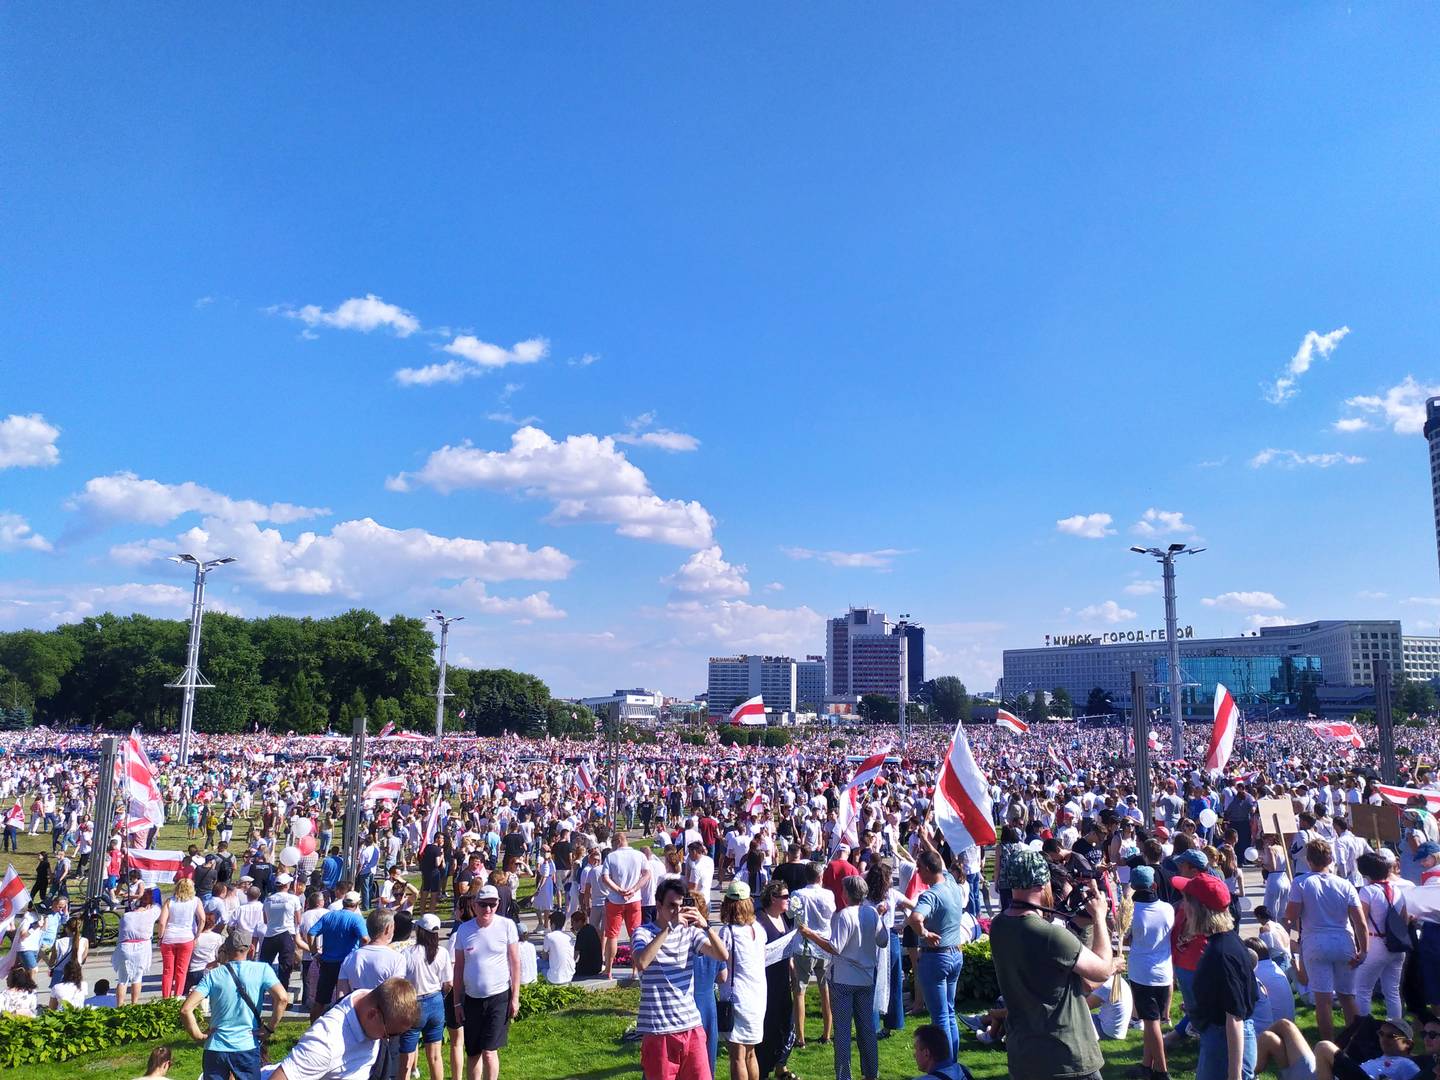 Митинг около стеллы «Минск — город-герой», Минск. 16 августа 2020 г. (Фото — Melirius)